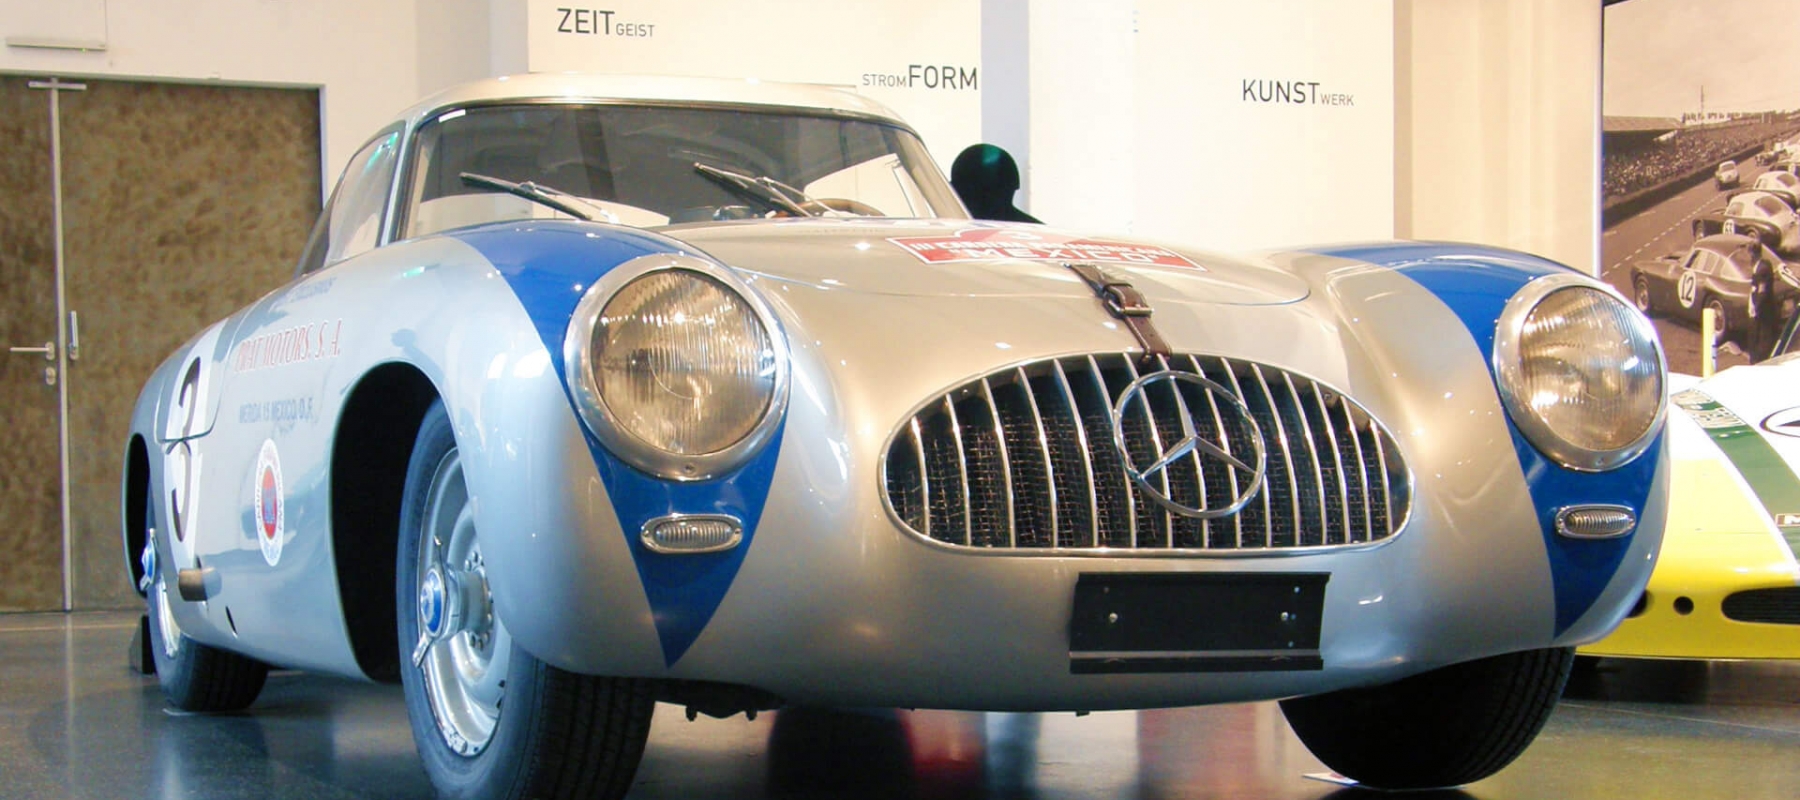 Das Hamburger Automuseum Prototyp präsentierte 2009/2010 in seiner Sonderausstellung 